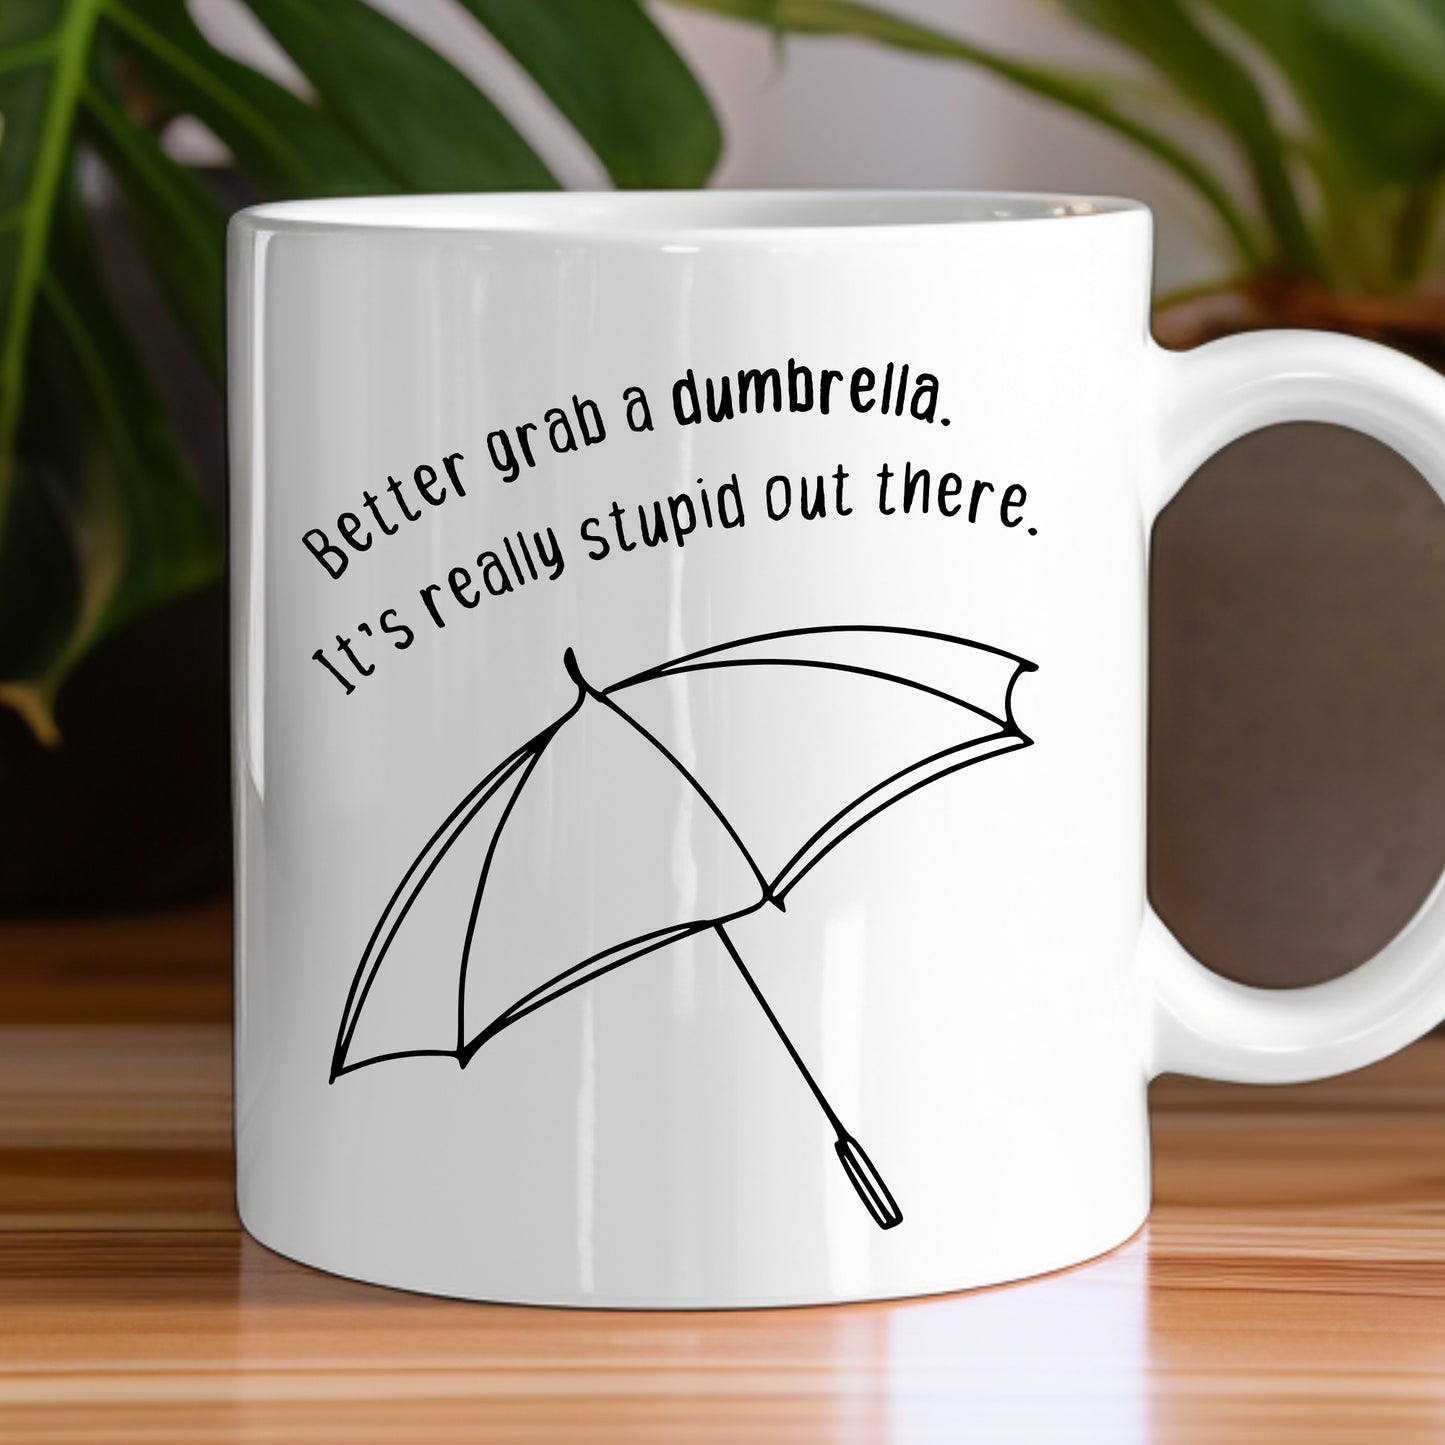 Better Grab a Dumbrella... Mug